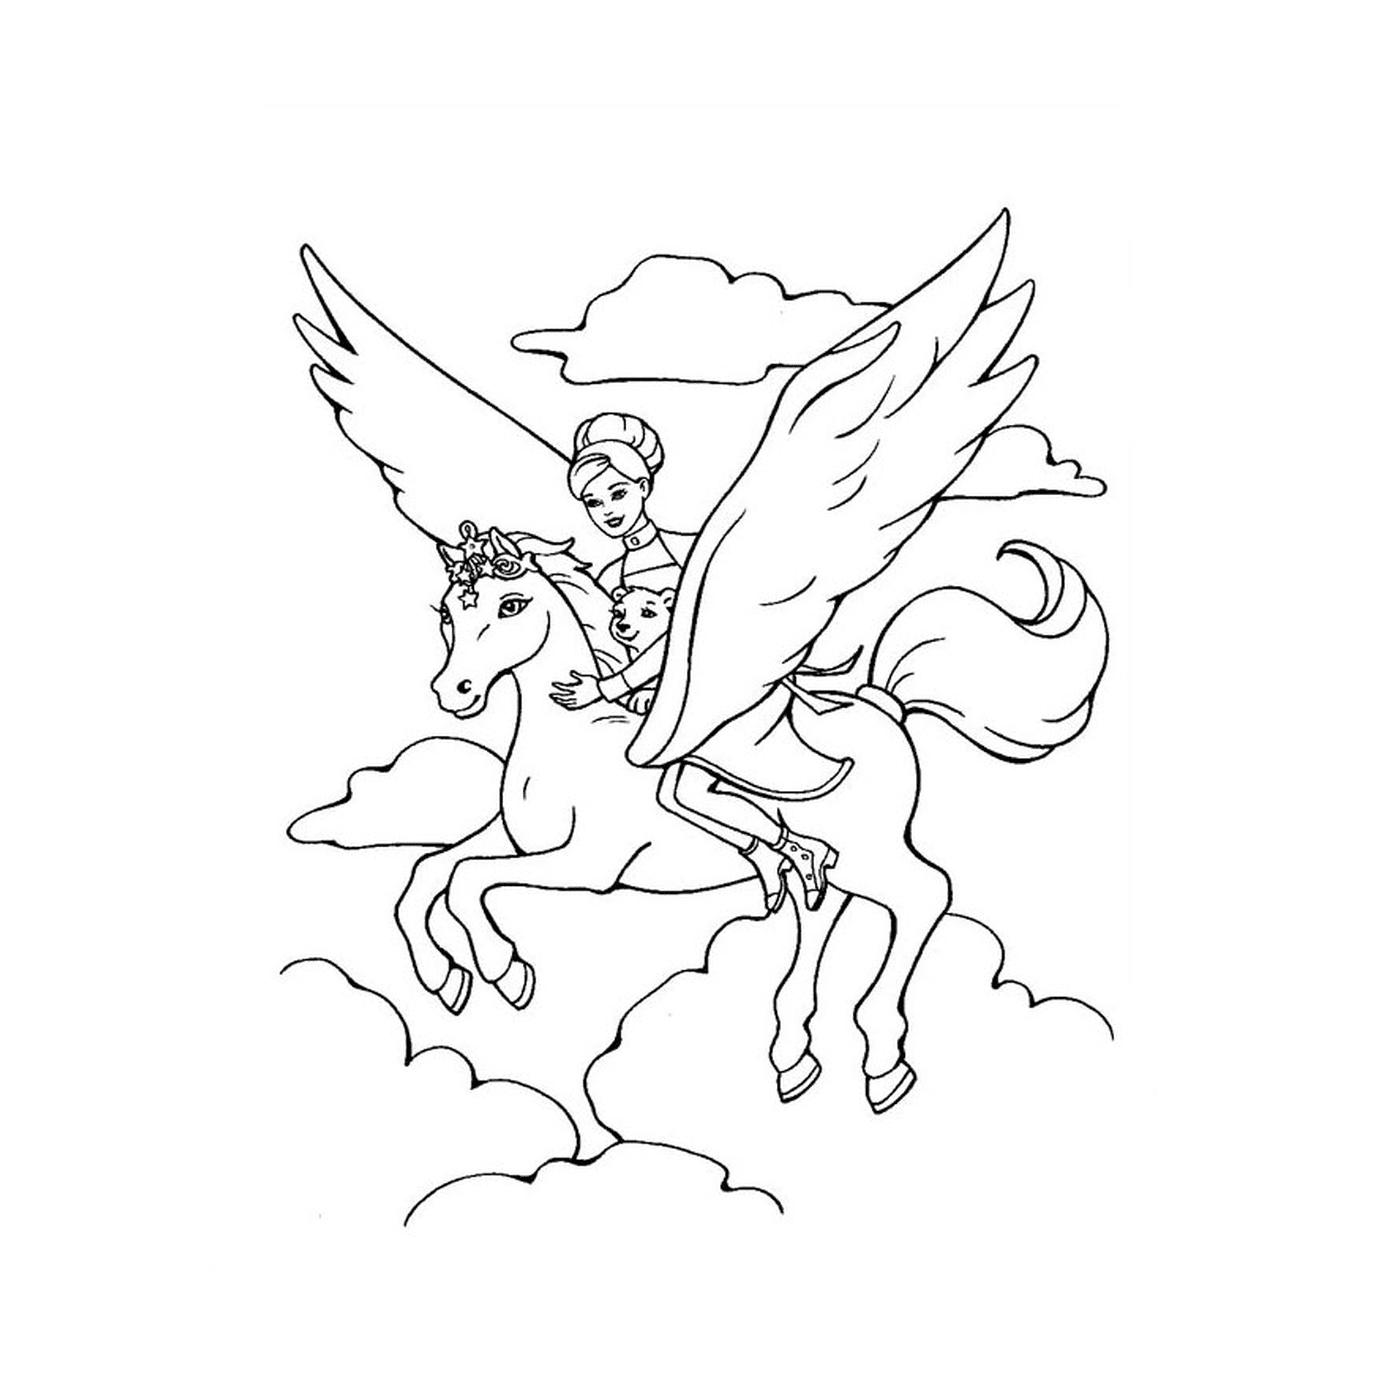  बारमा और जादू घोड़े पर सवार एक स्वर्गदूत के साथ 